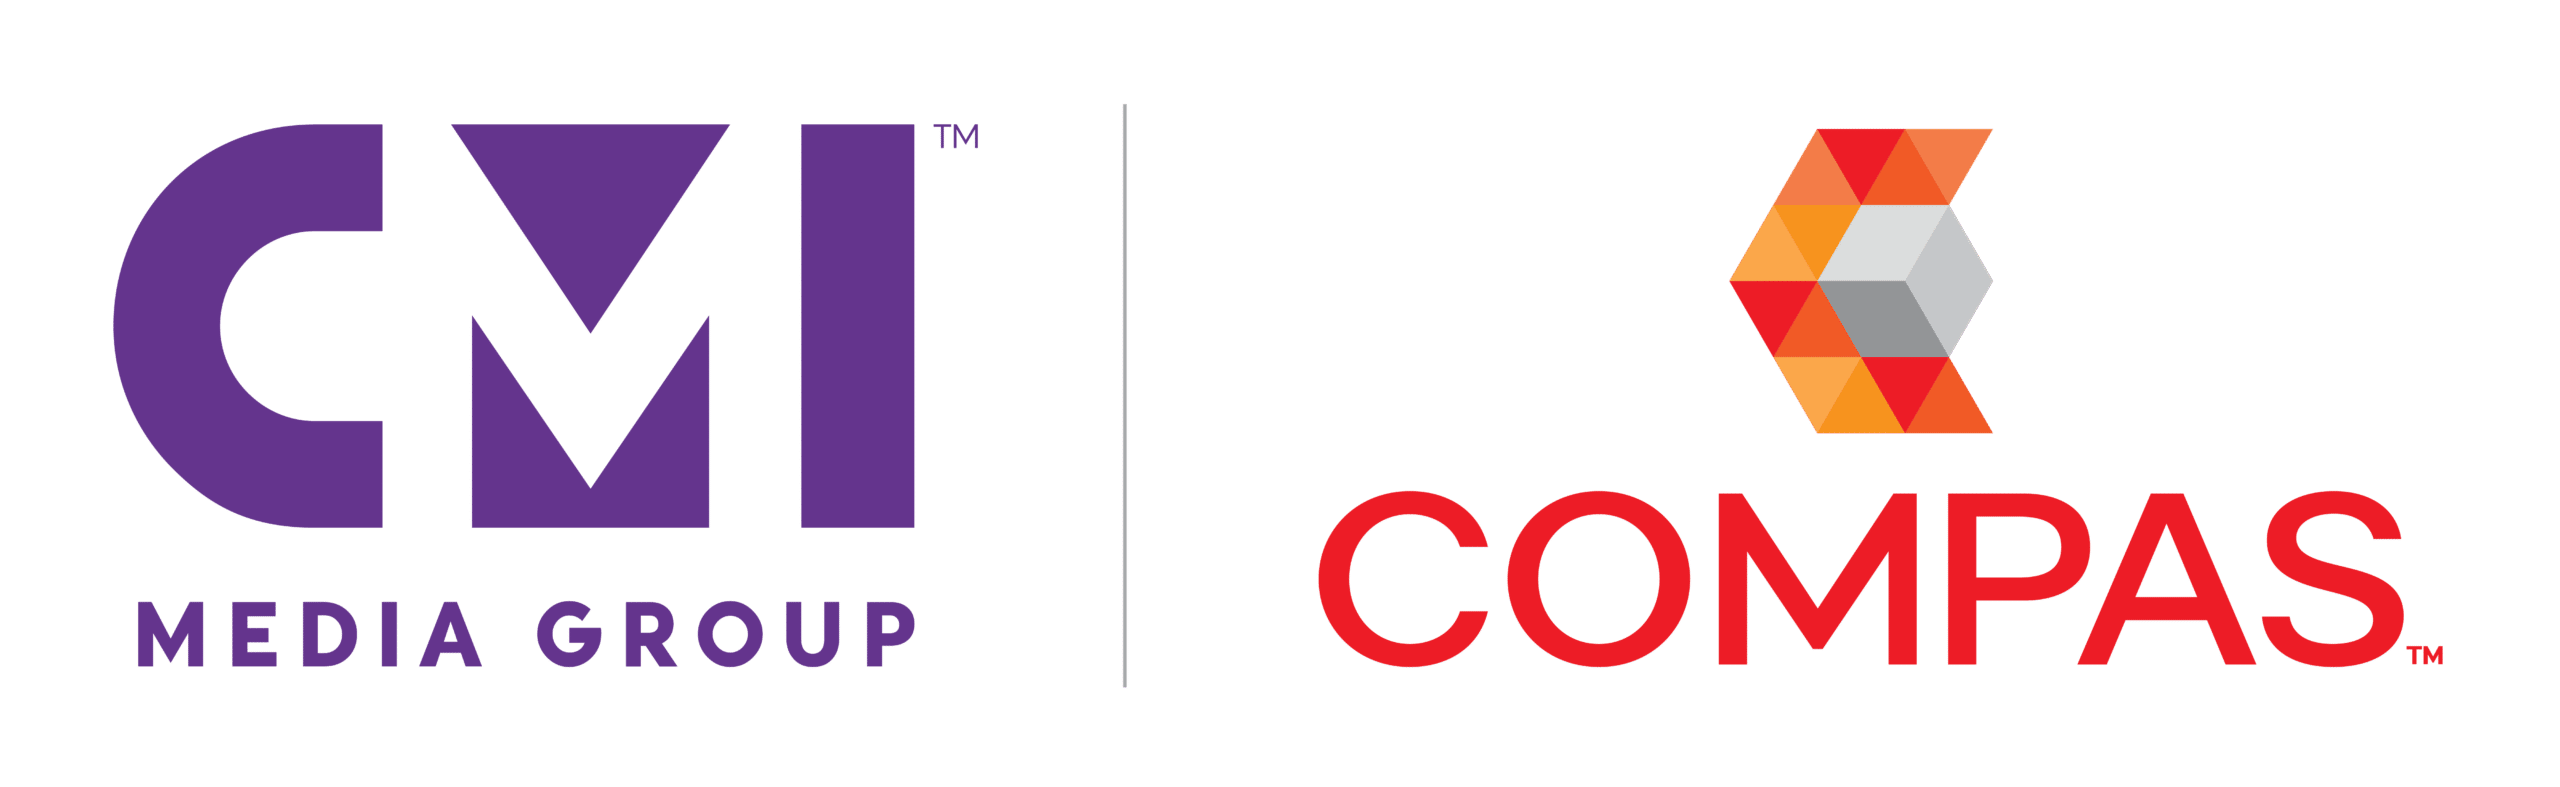 CMI Media Group and Compas logo